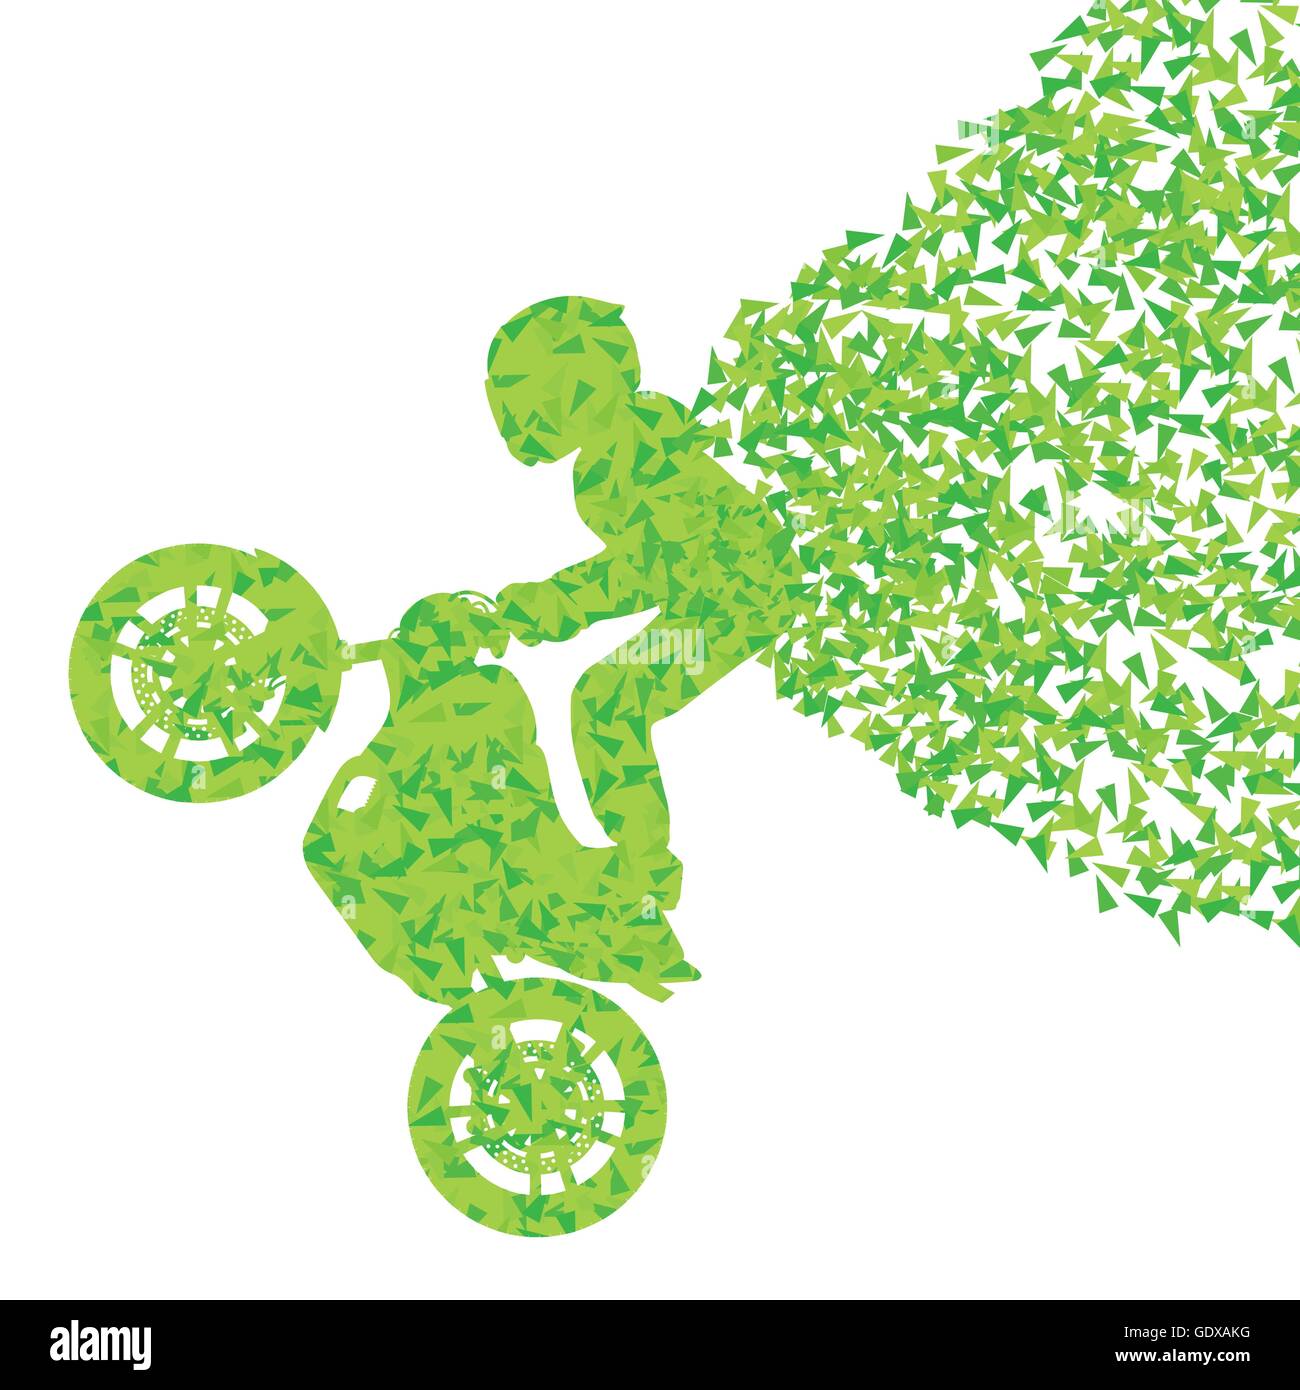 Moto Stunt rider concept fond vecteur performance faite de fragments isolated on white Illustration de Vecteur